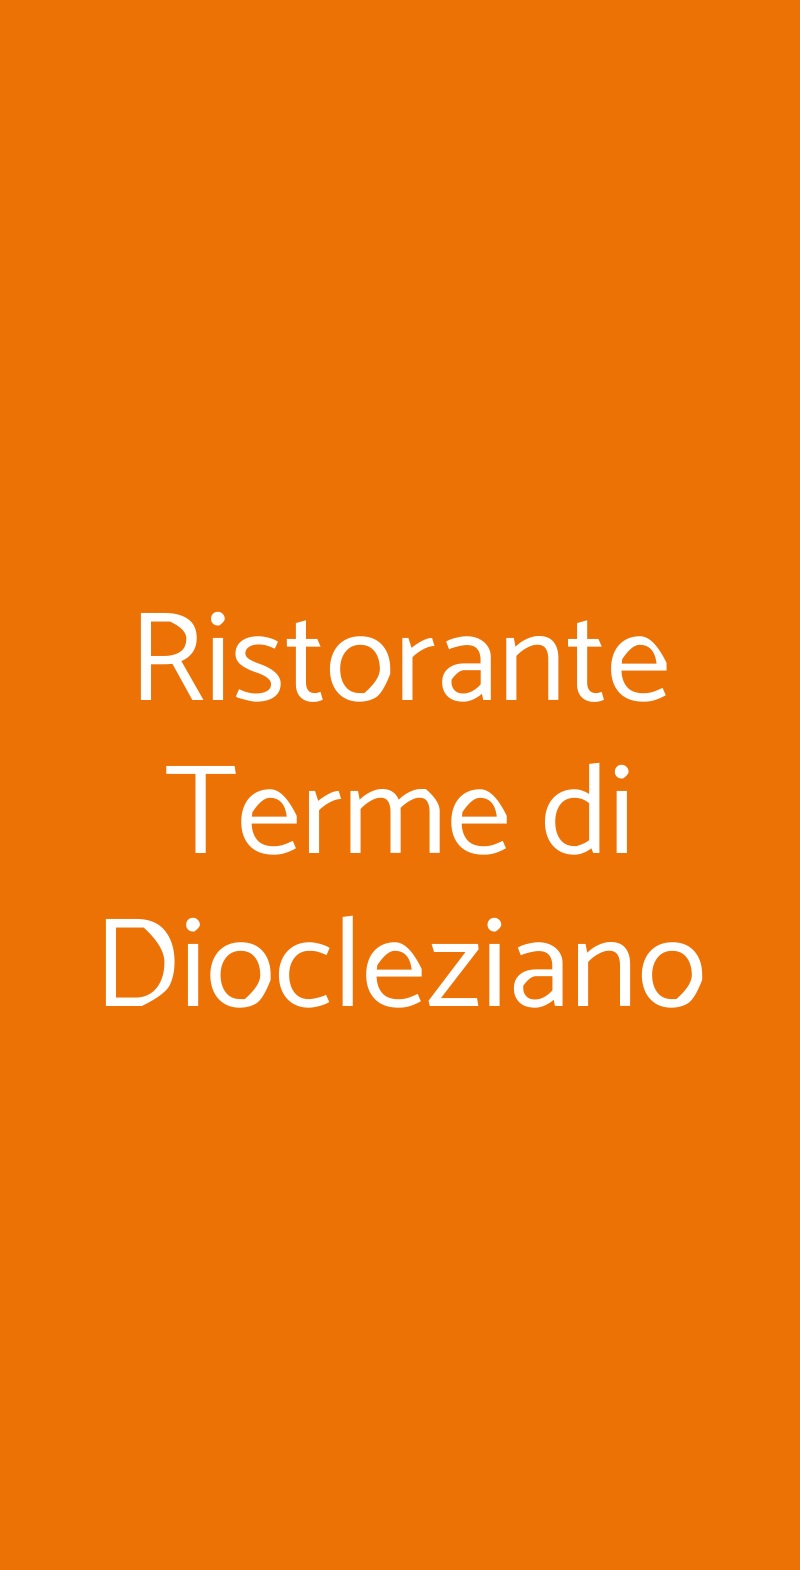 Ristorante Terme di Diocleziano Roma menù 1 pagina